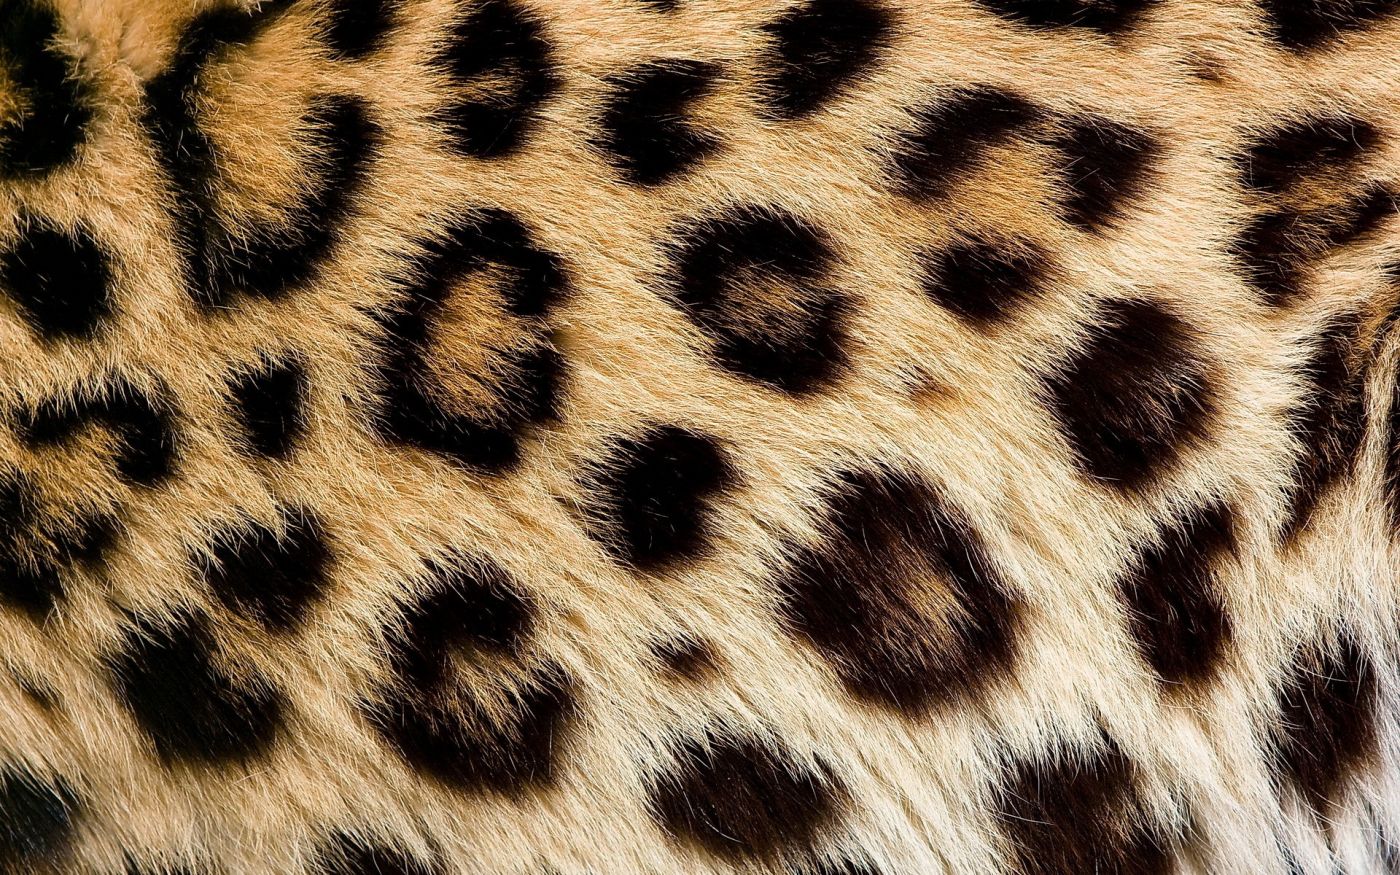 壁纸1280×1024豹子写真 2 2壁纸,豹子写真壁纸图片-动物壁纸-动物图片素材-桌面壁纸